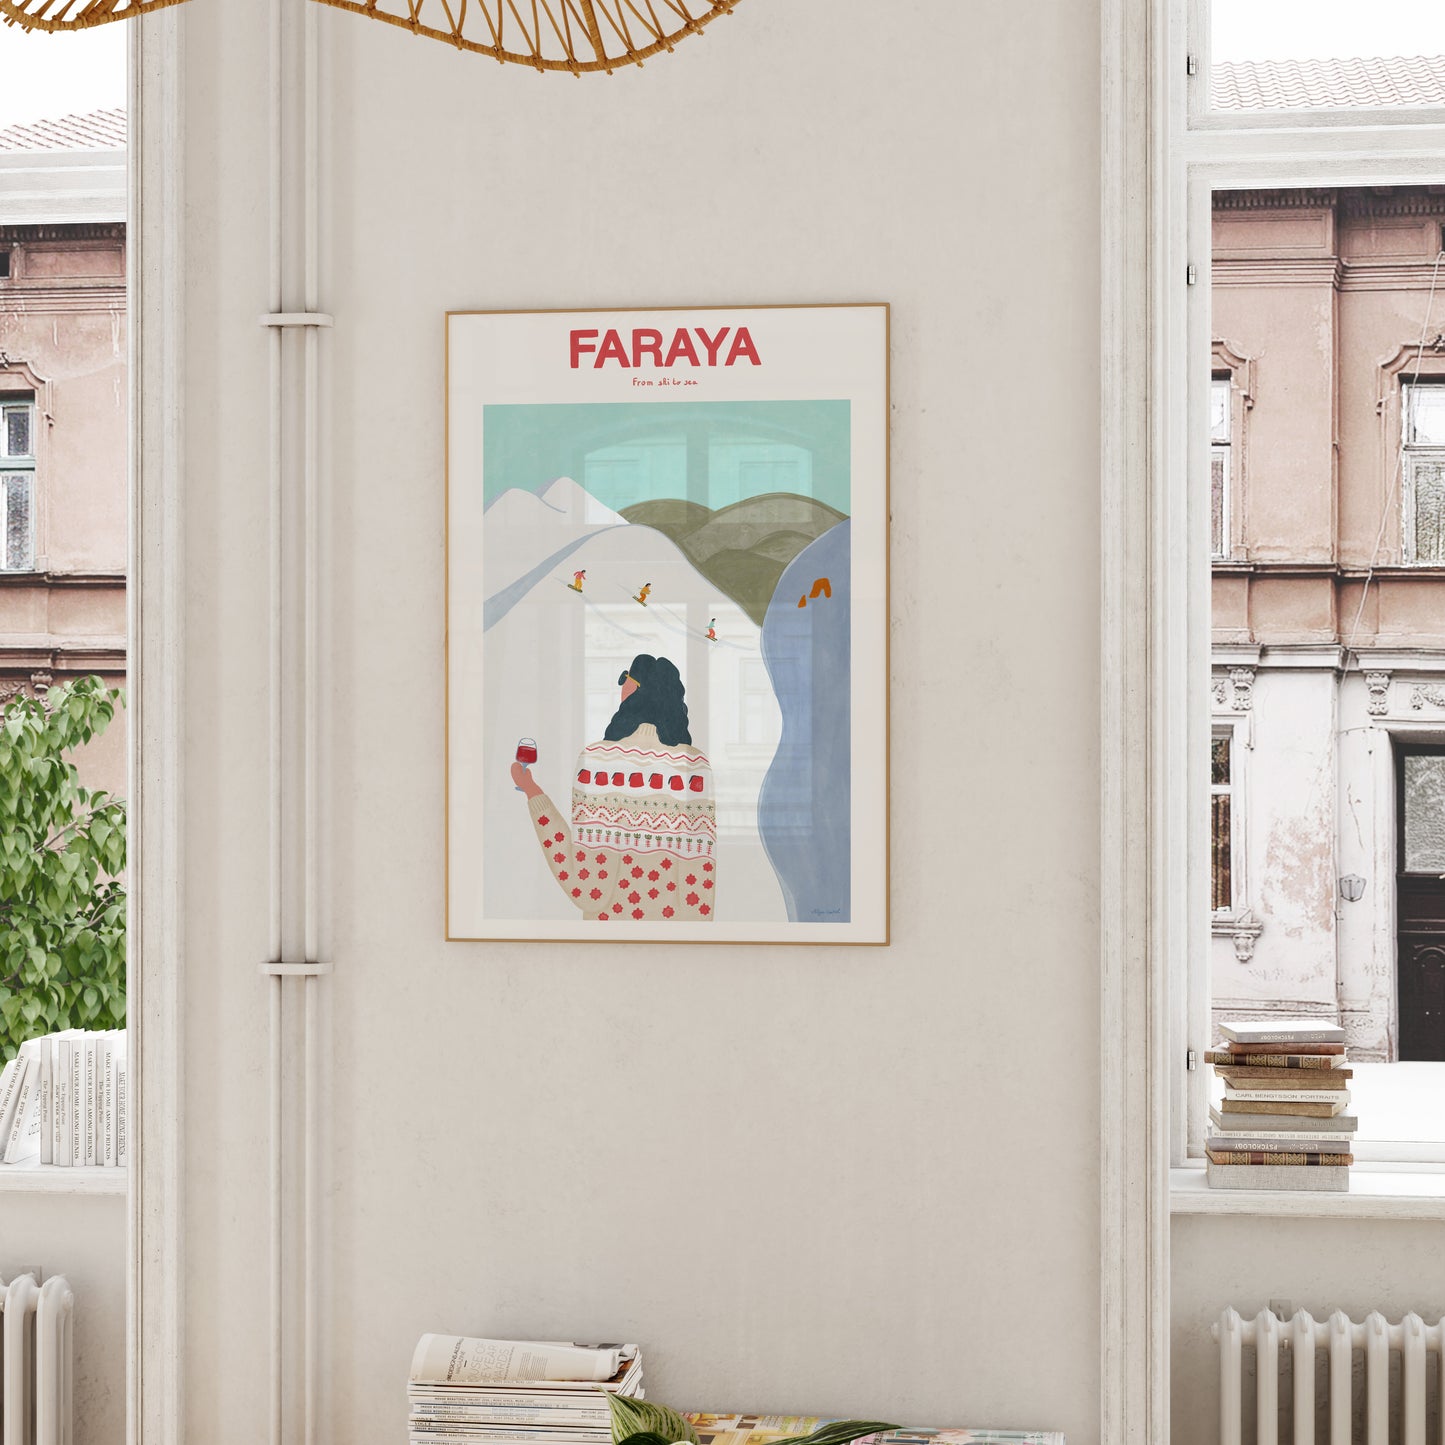 Faraya (From Ski to Sea)